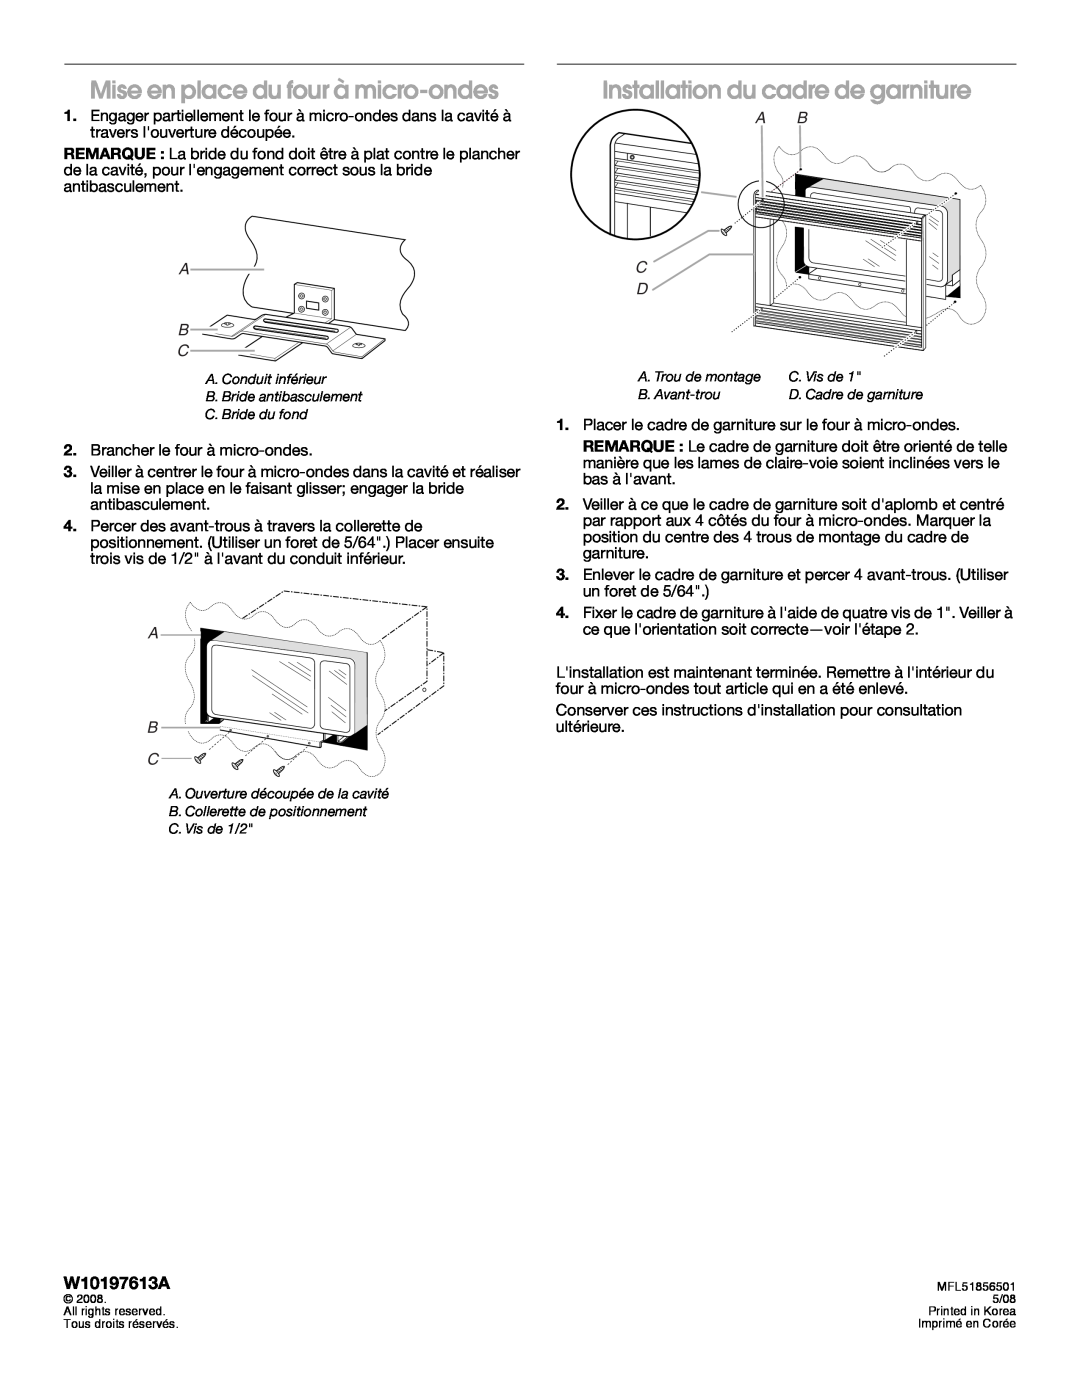 Whirlpool MK1154XV Mise en place du four à micro-ondes, Installation du cadre de garniture, W10197613A, A B C D 